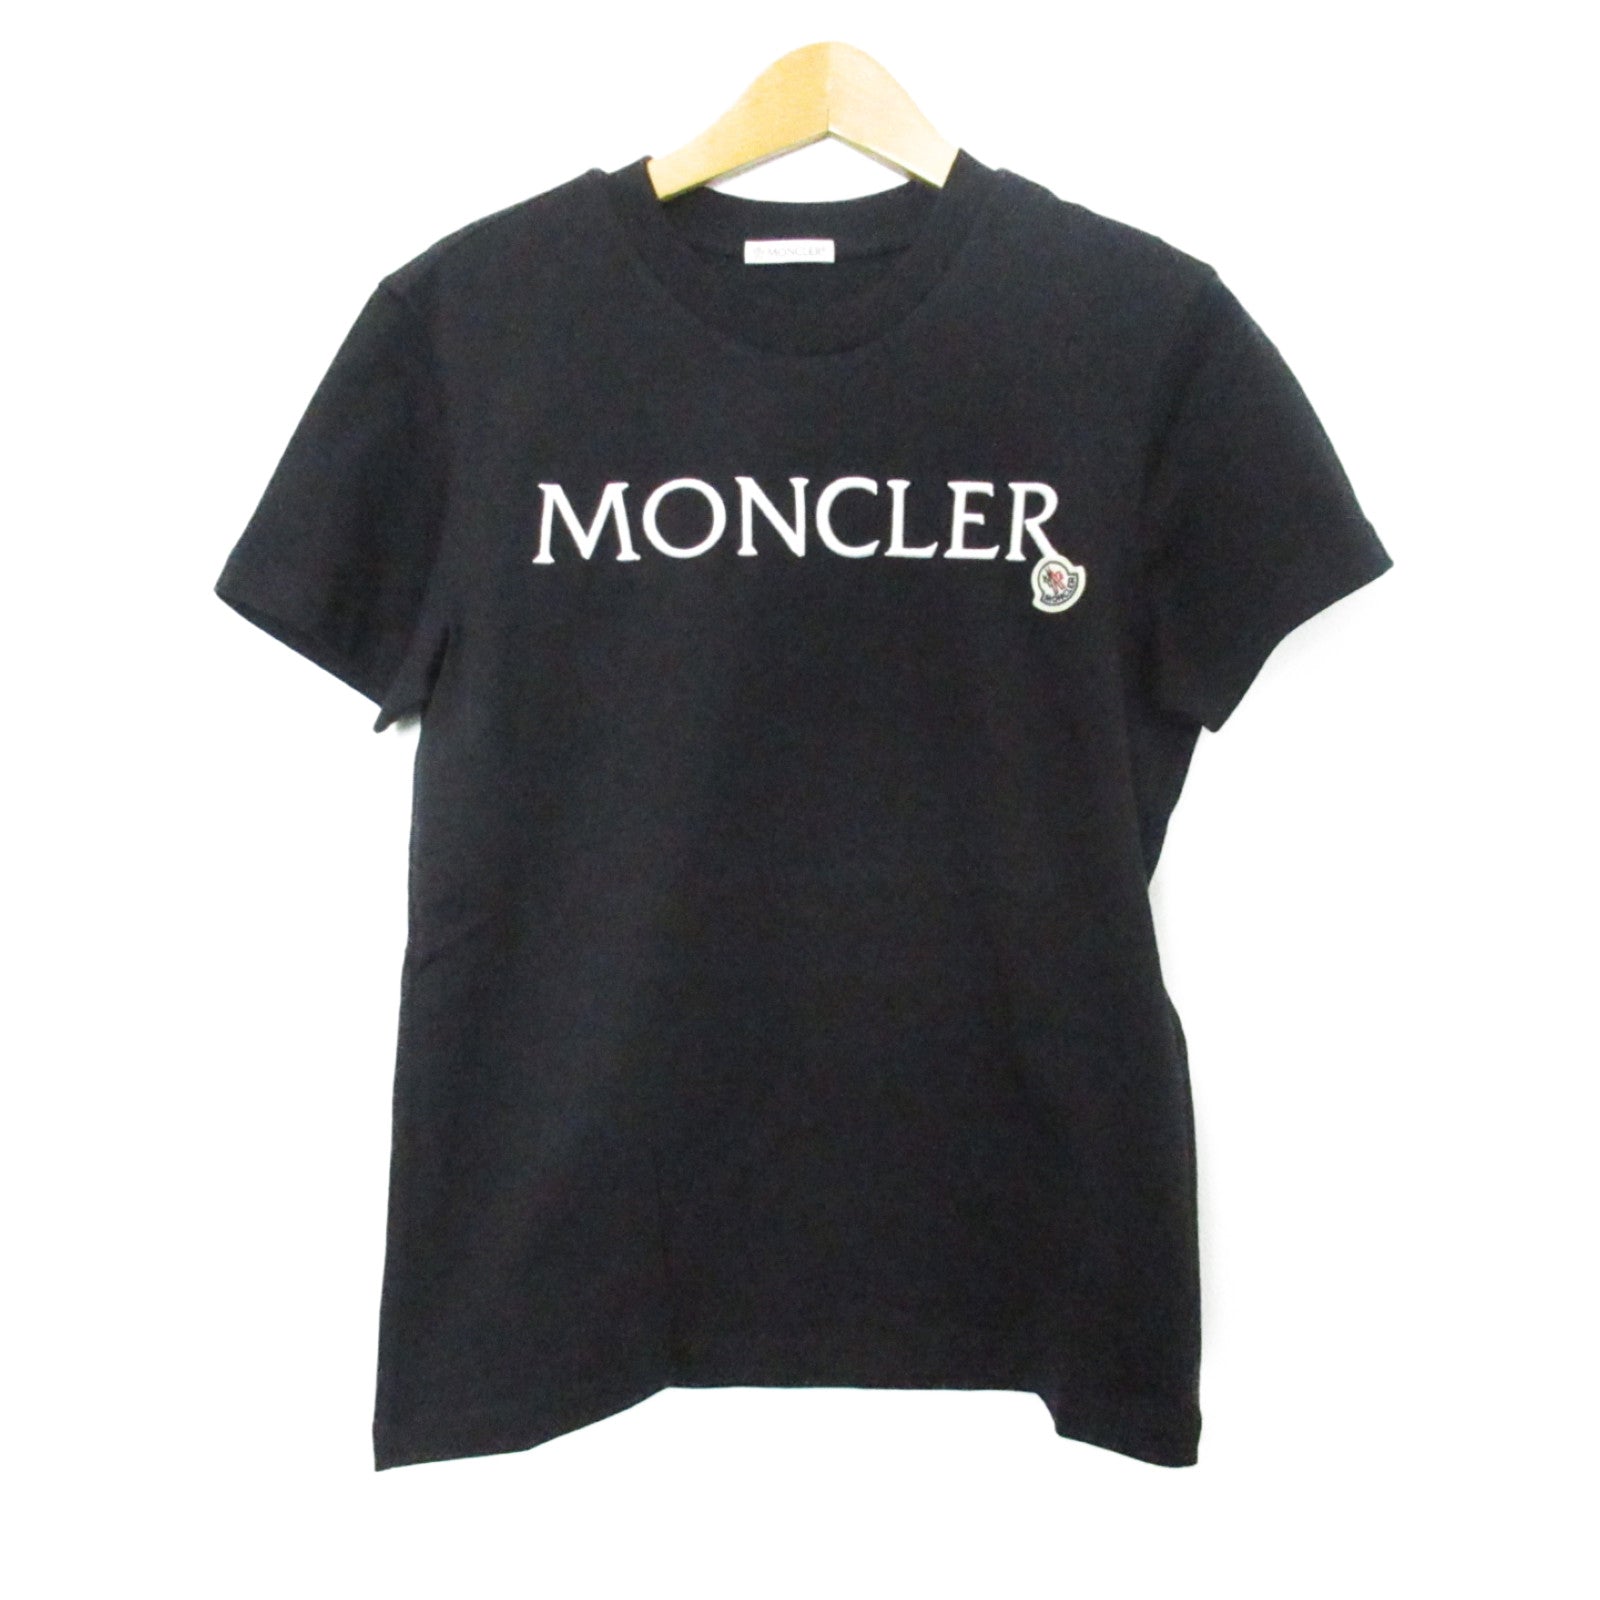 Moncler MONCLER  Half-Hand   Tops Cotton   Black 8C00006829HP999XS